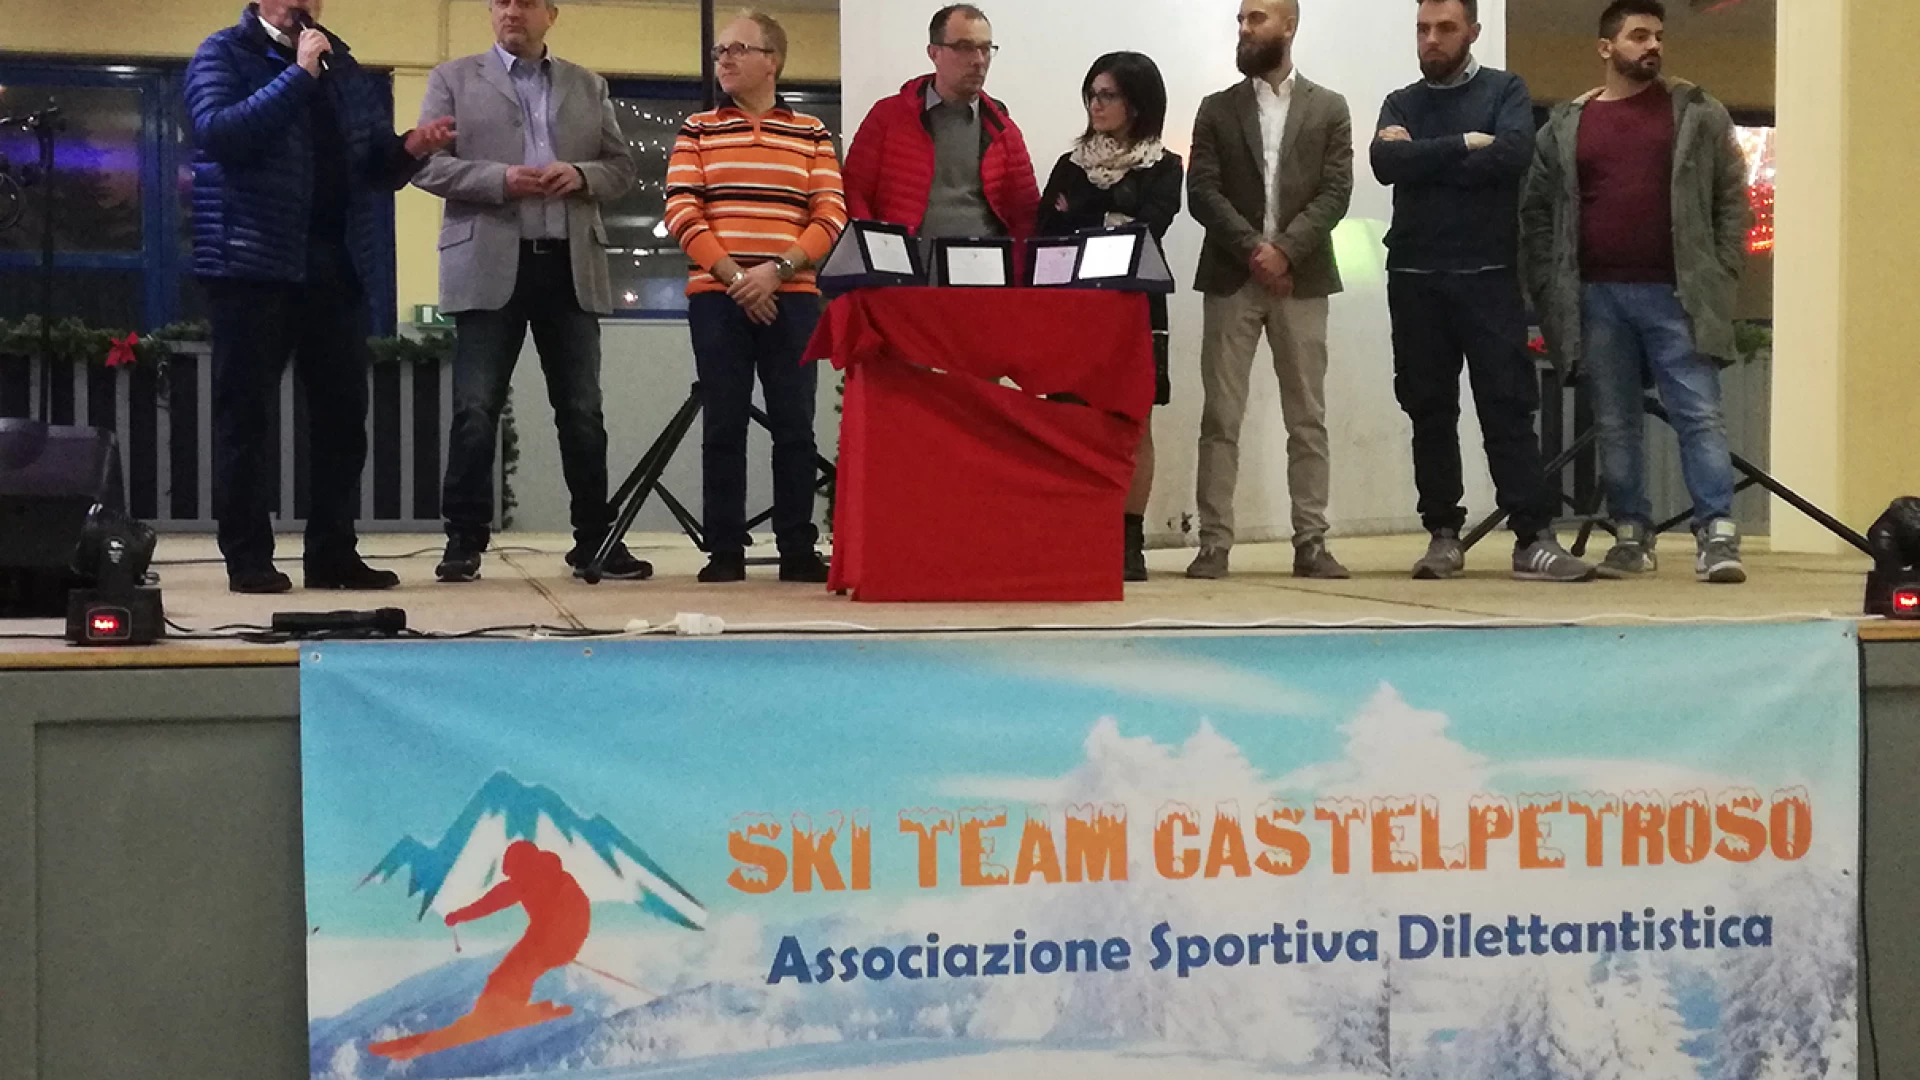 Lo Ski Team Castelpetroso festeggia il suo primo compleanno ed inaugura il castello di Babbo Natale. Un mondo magico per i bambini per tutto il periodo di Natale. Guarda il nostro servizio video.